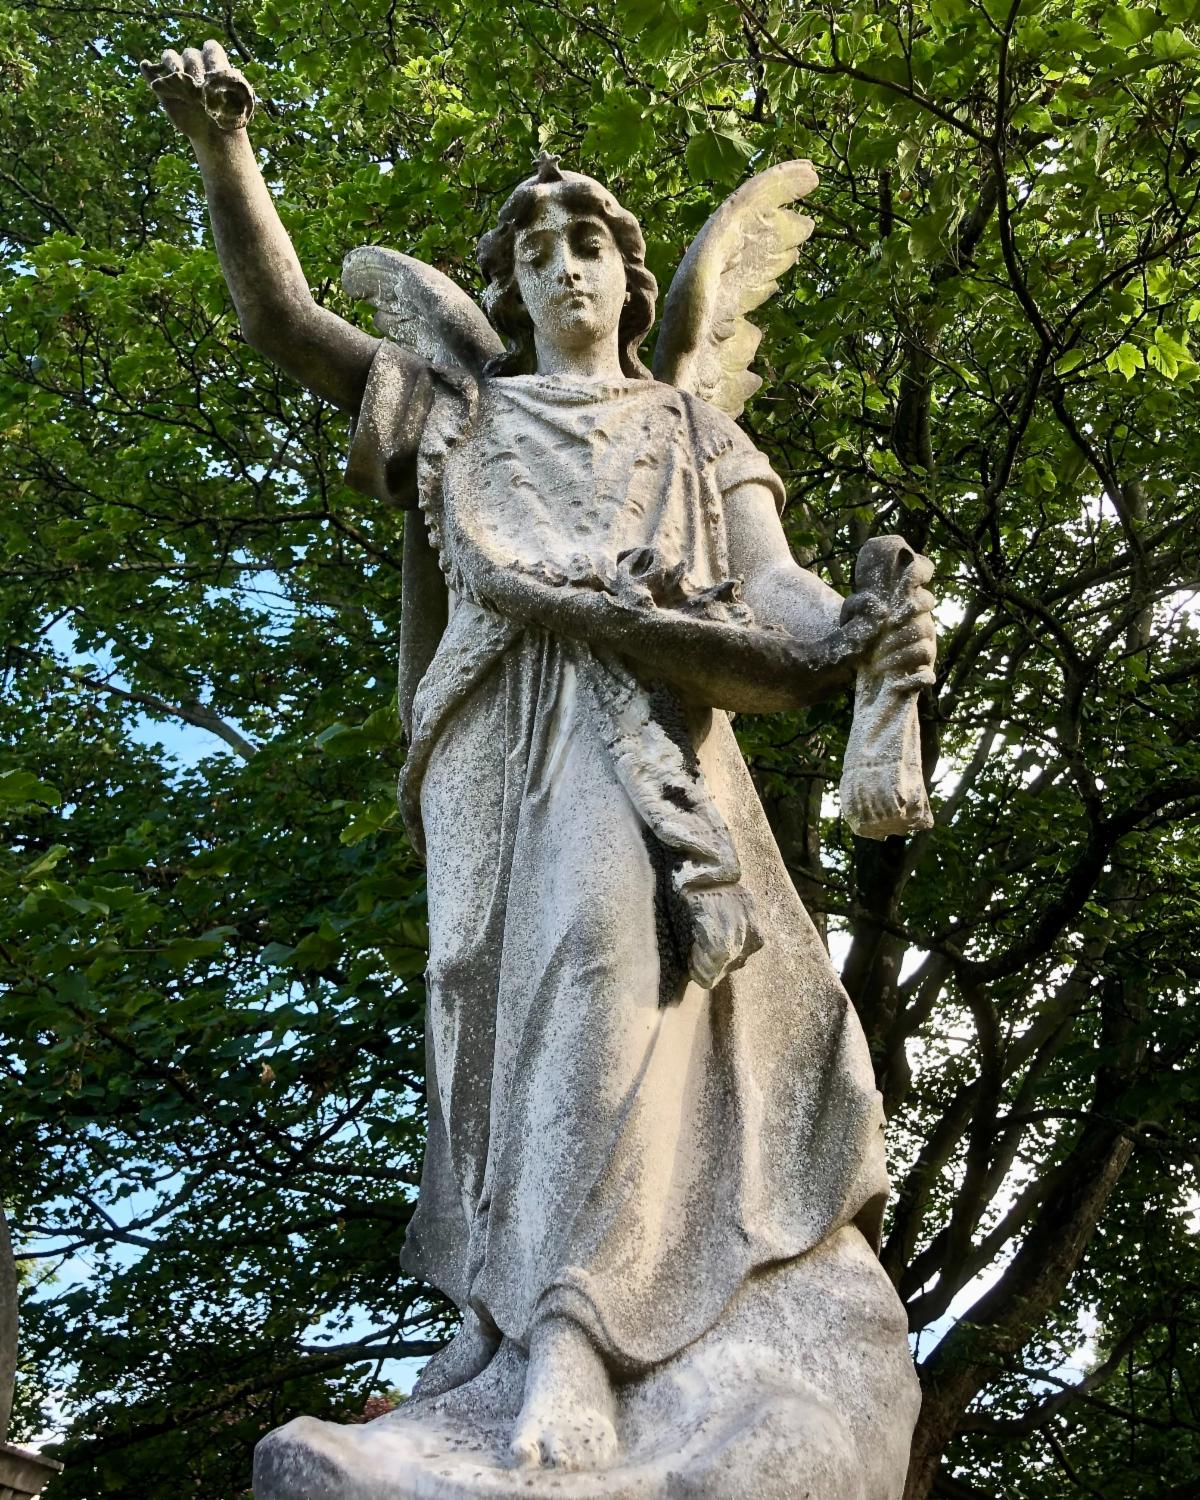 A statue of an angel holding a bird